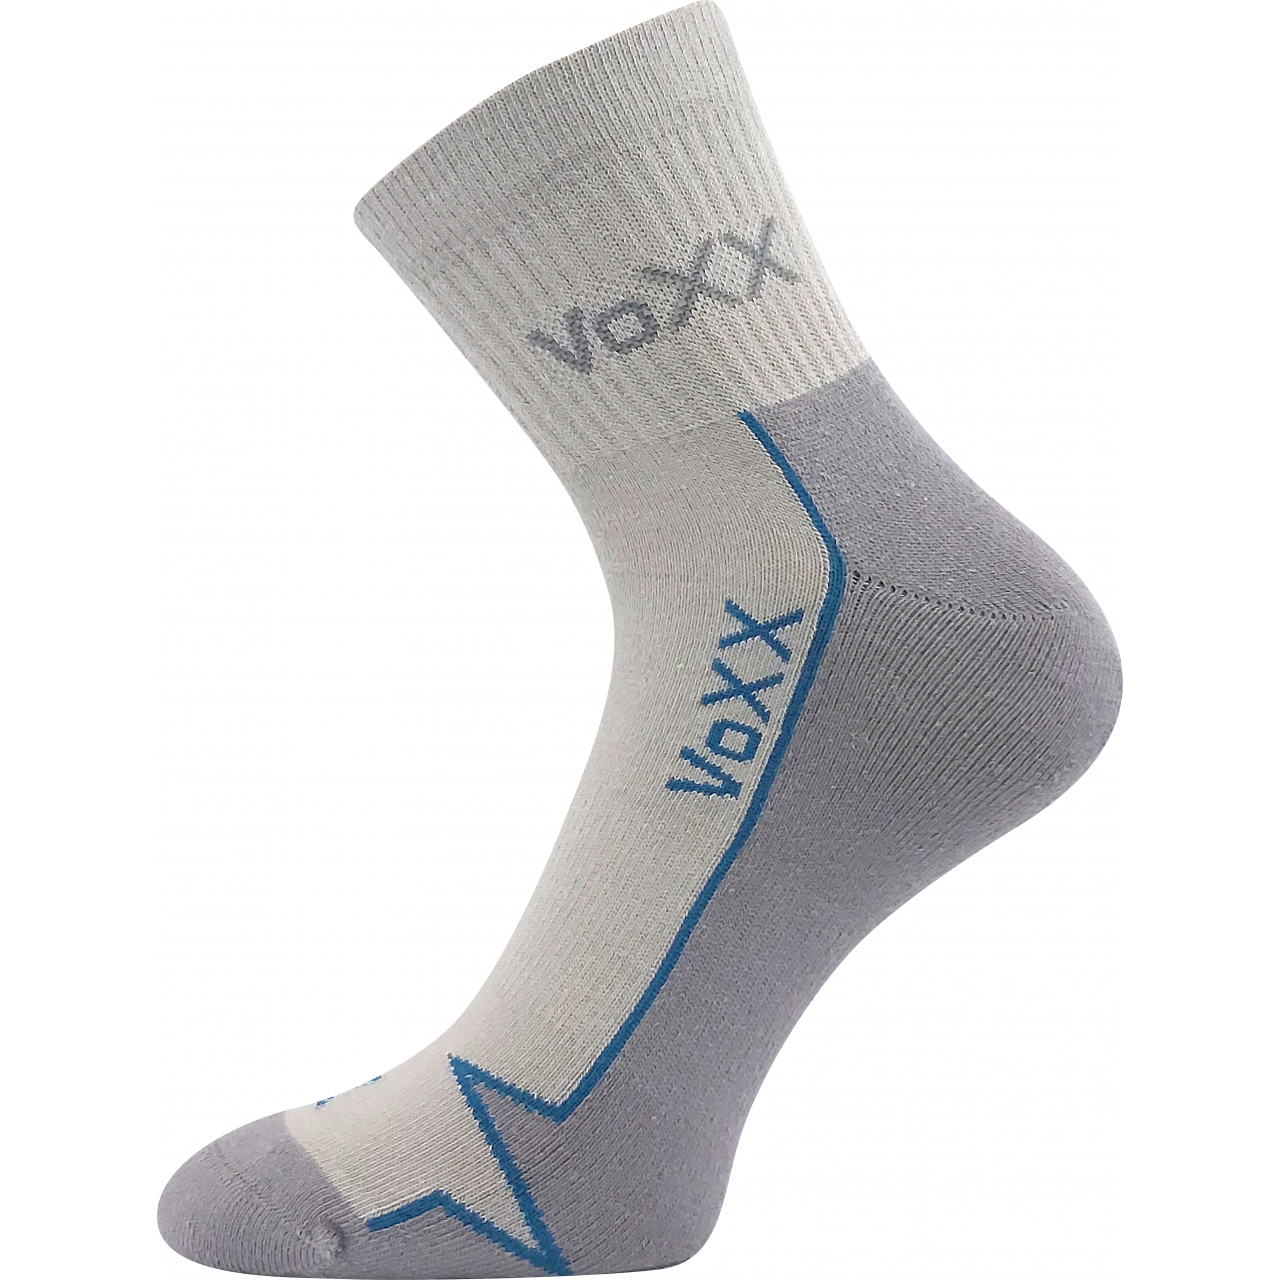 Ponožky sportovní Voxx Locator B - světle šedé, 35-38